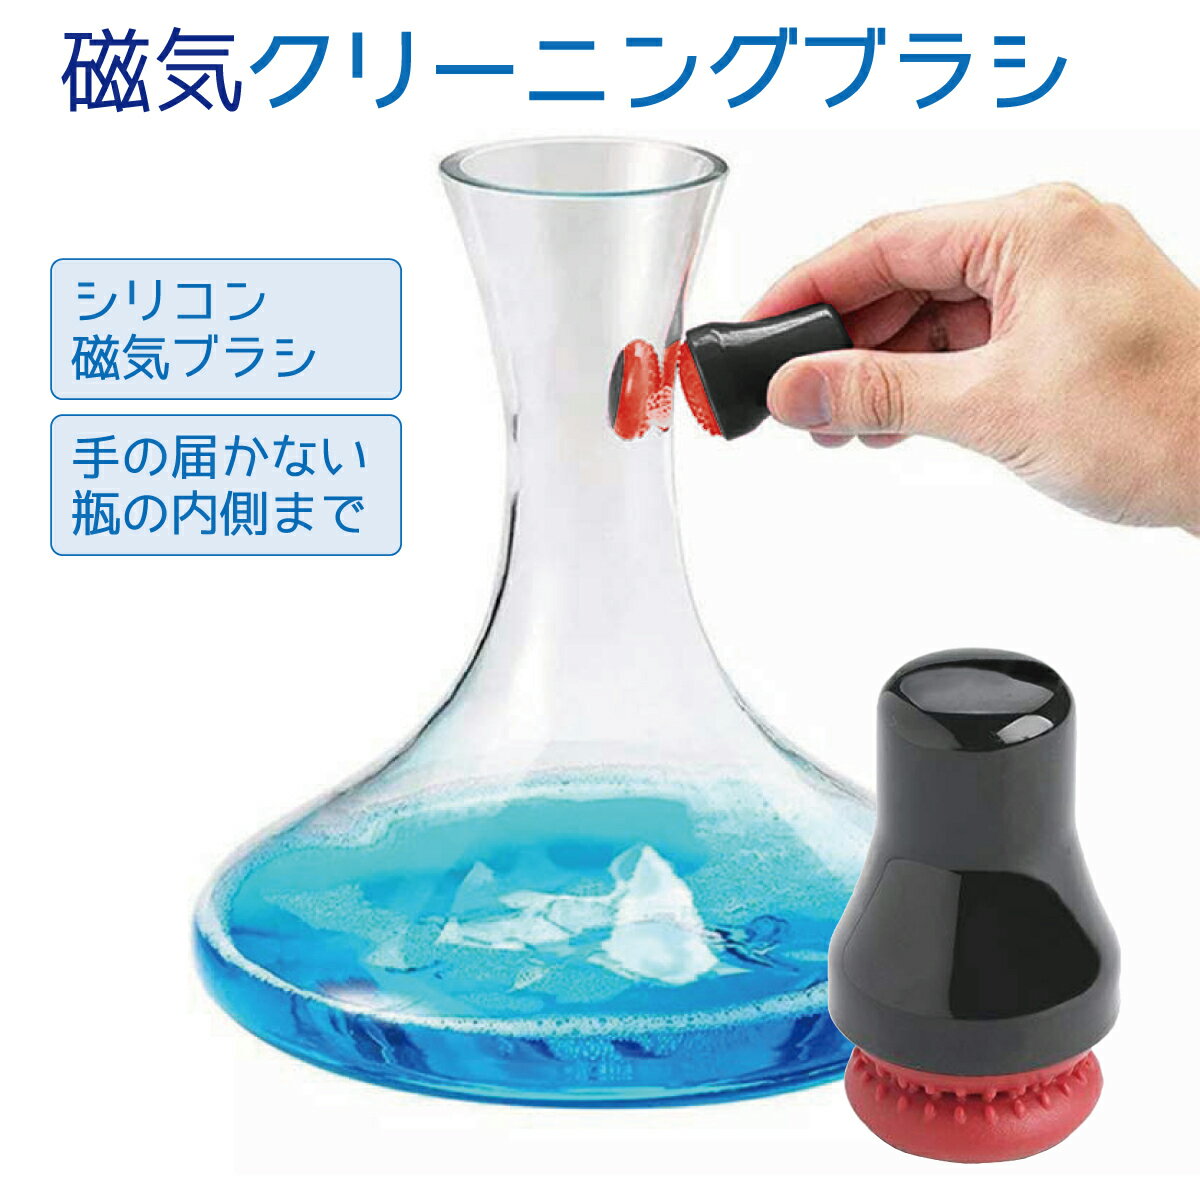 磁気 クリーニングブラシ シリコン 磁気ブラシ ボトル 花瓶 ガラス製品 水槽 mag-brush